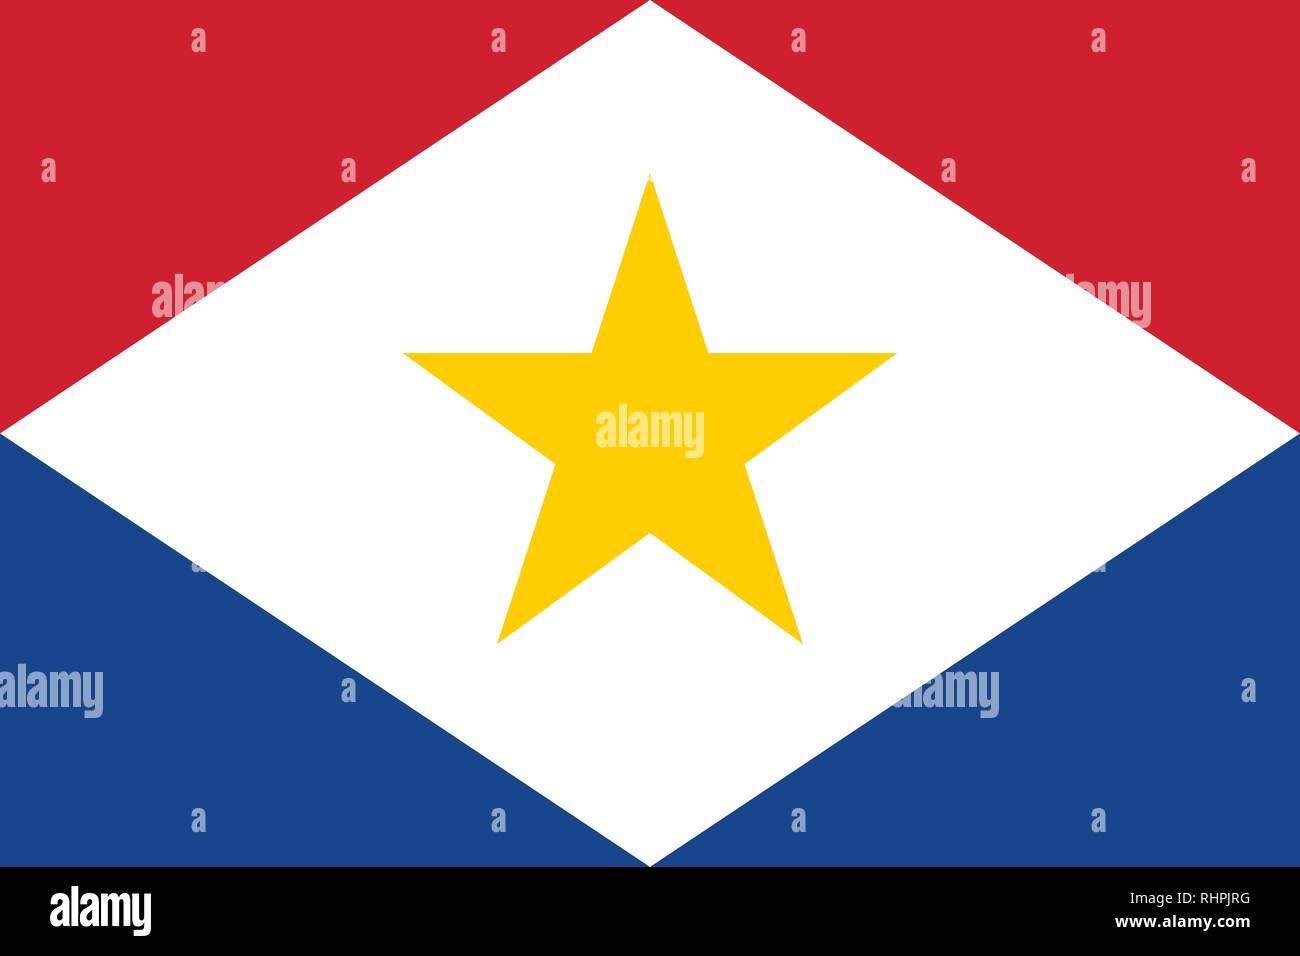 Immagine vettoriale di Saba bandiera. Sulla base del funzionario e l'esatto Saba bandiera dimensioni (3:2) & colori (bianco, 186C, 286c e 116C) Illustrazione Vettoriale